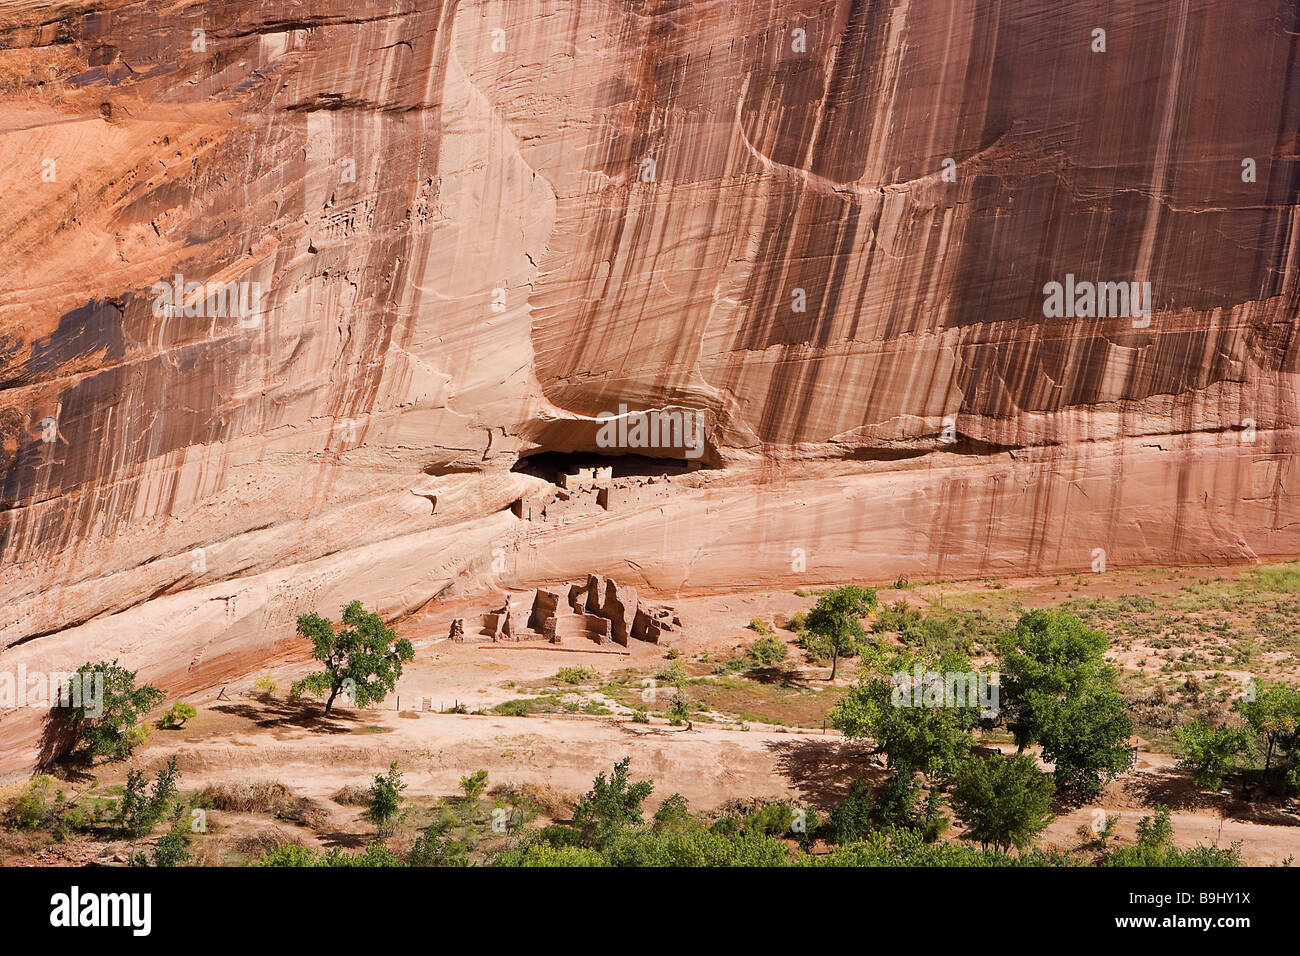 USA Arizona Canyon de Chelly National Monument weiße Haus Ruine Felswand Felsen Pueblo-Kolonie Amerika Anblick Reise Tourismus Canyon Stockfoto